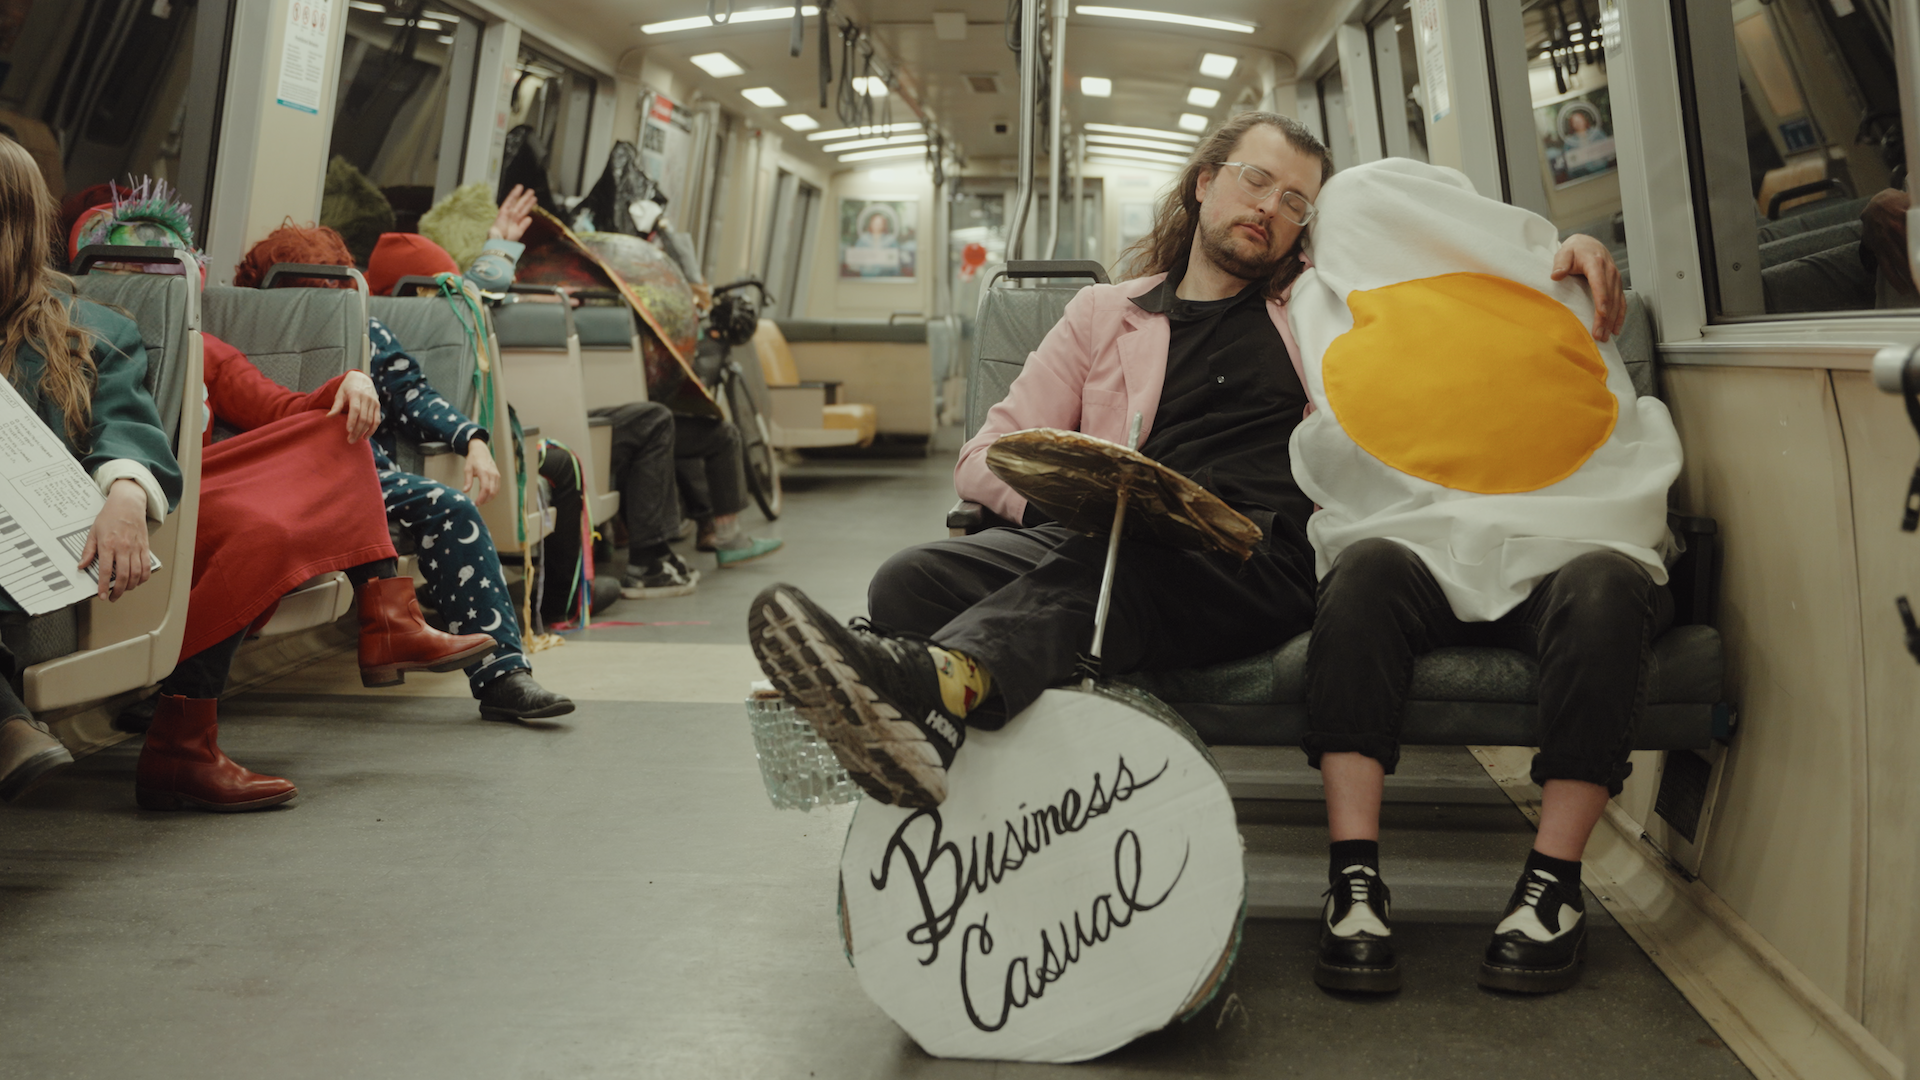 Um homem com cabelos longos e óculos, vestindo um blazer rosa sobre roupas escuras, apoia as pernas em uma bateria de brinquedo e coloca o braço esquerdo sobre uma pessoa vestindo uma fantasia de ovo frito.  Ambos dormem no assento do trem do metrô.